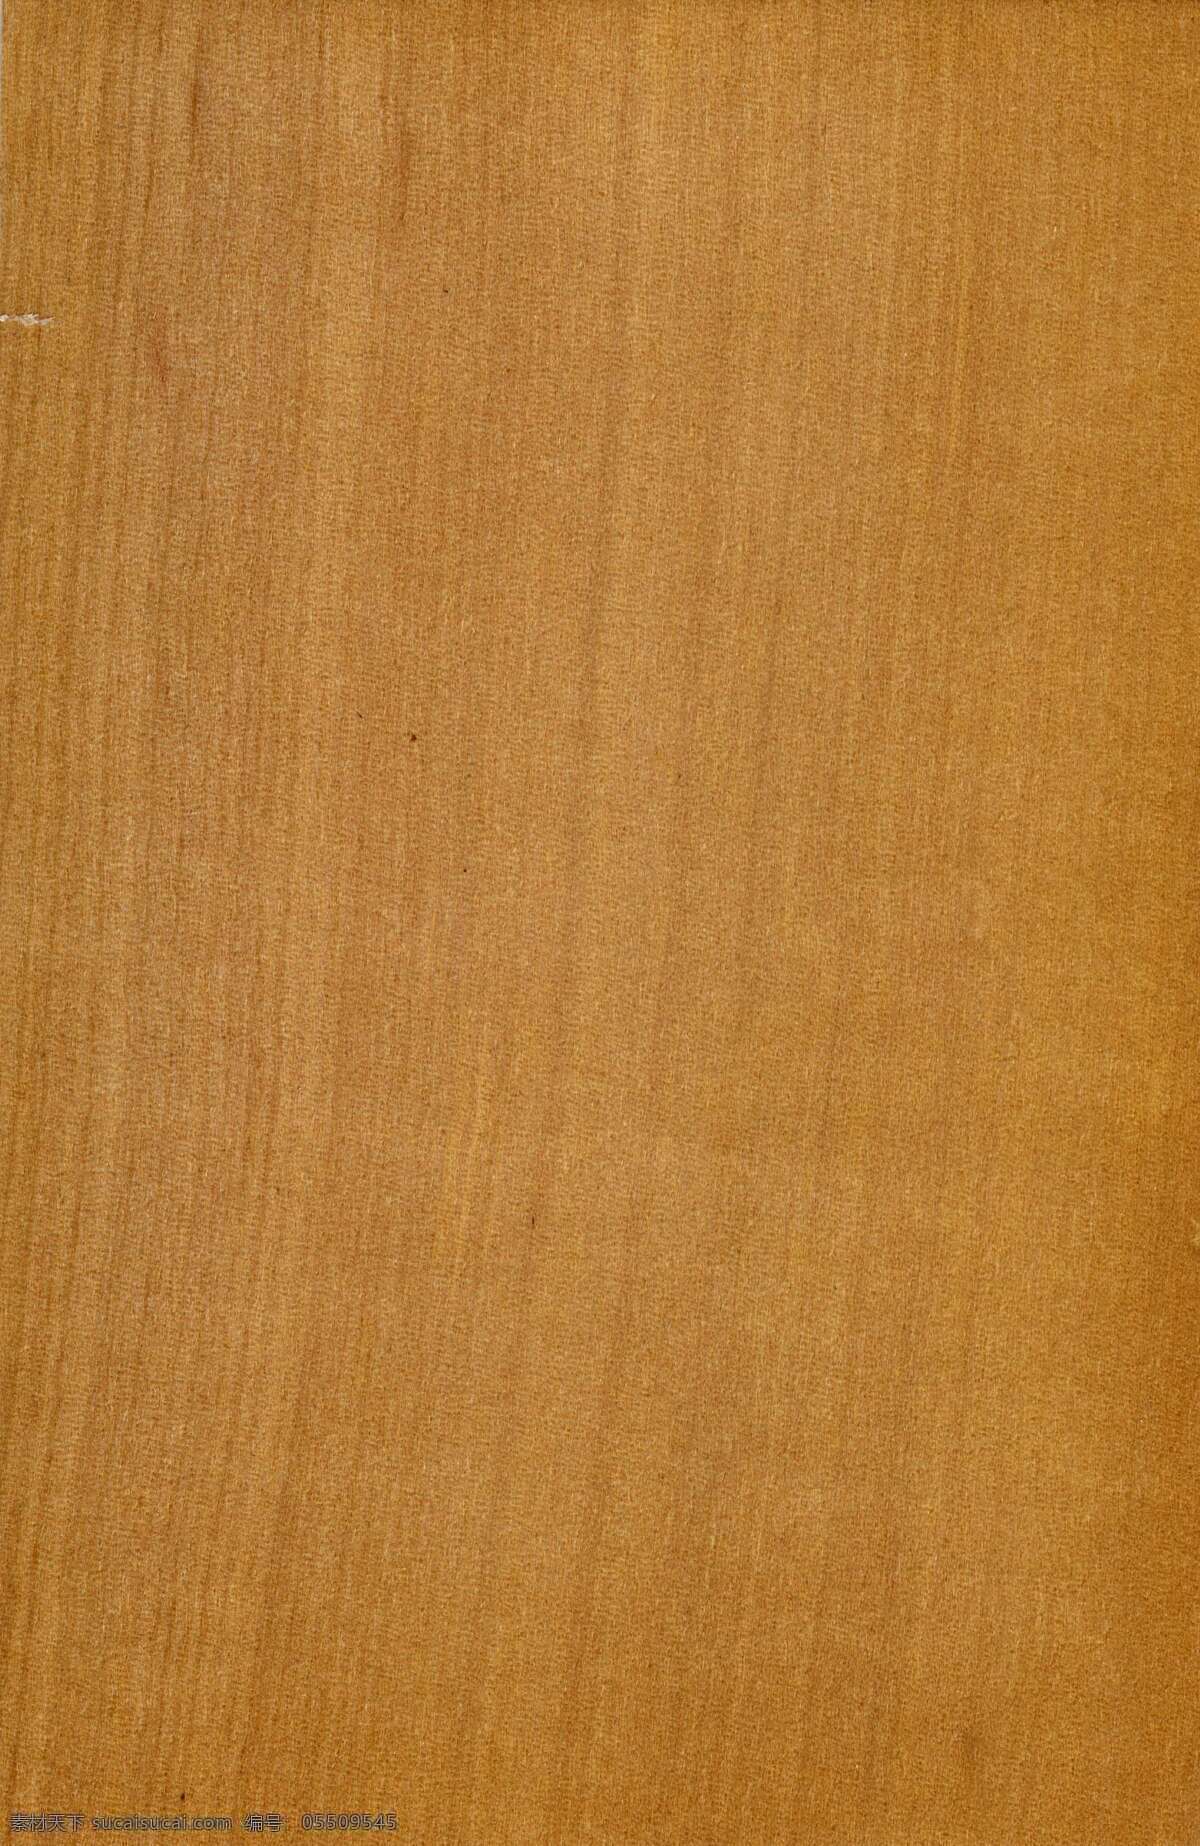 木纹 材质 贴图 地板 花纹 纹理 高清 设计素材 矢 模板下载 矢量